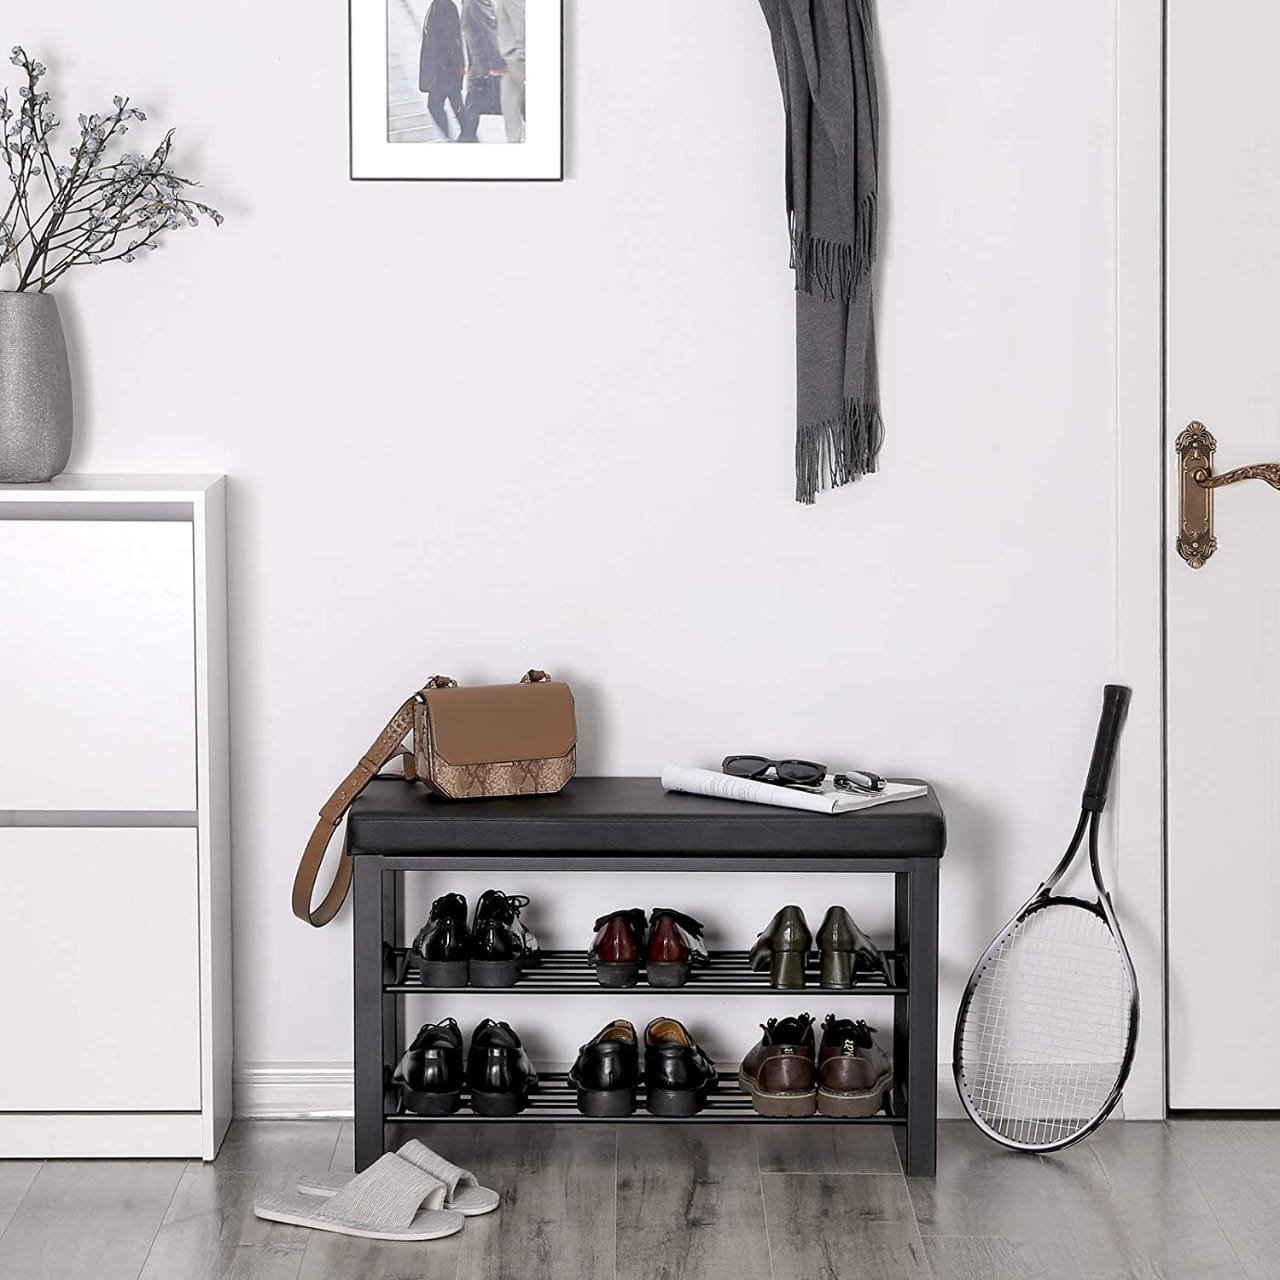 Zapateros decorativos: ideas para mantener tus zapatos en orden - Foto 1